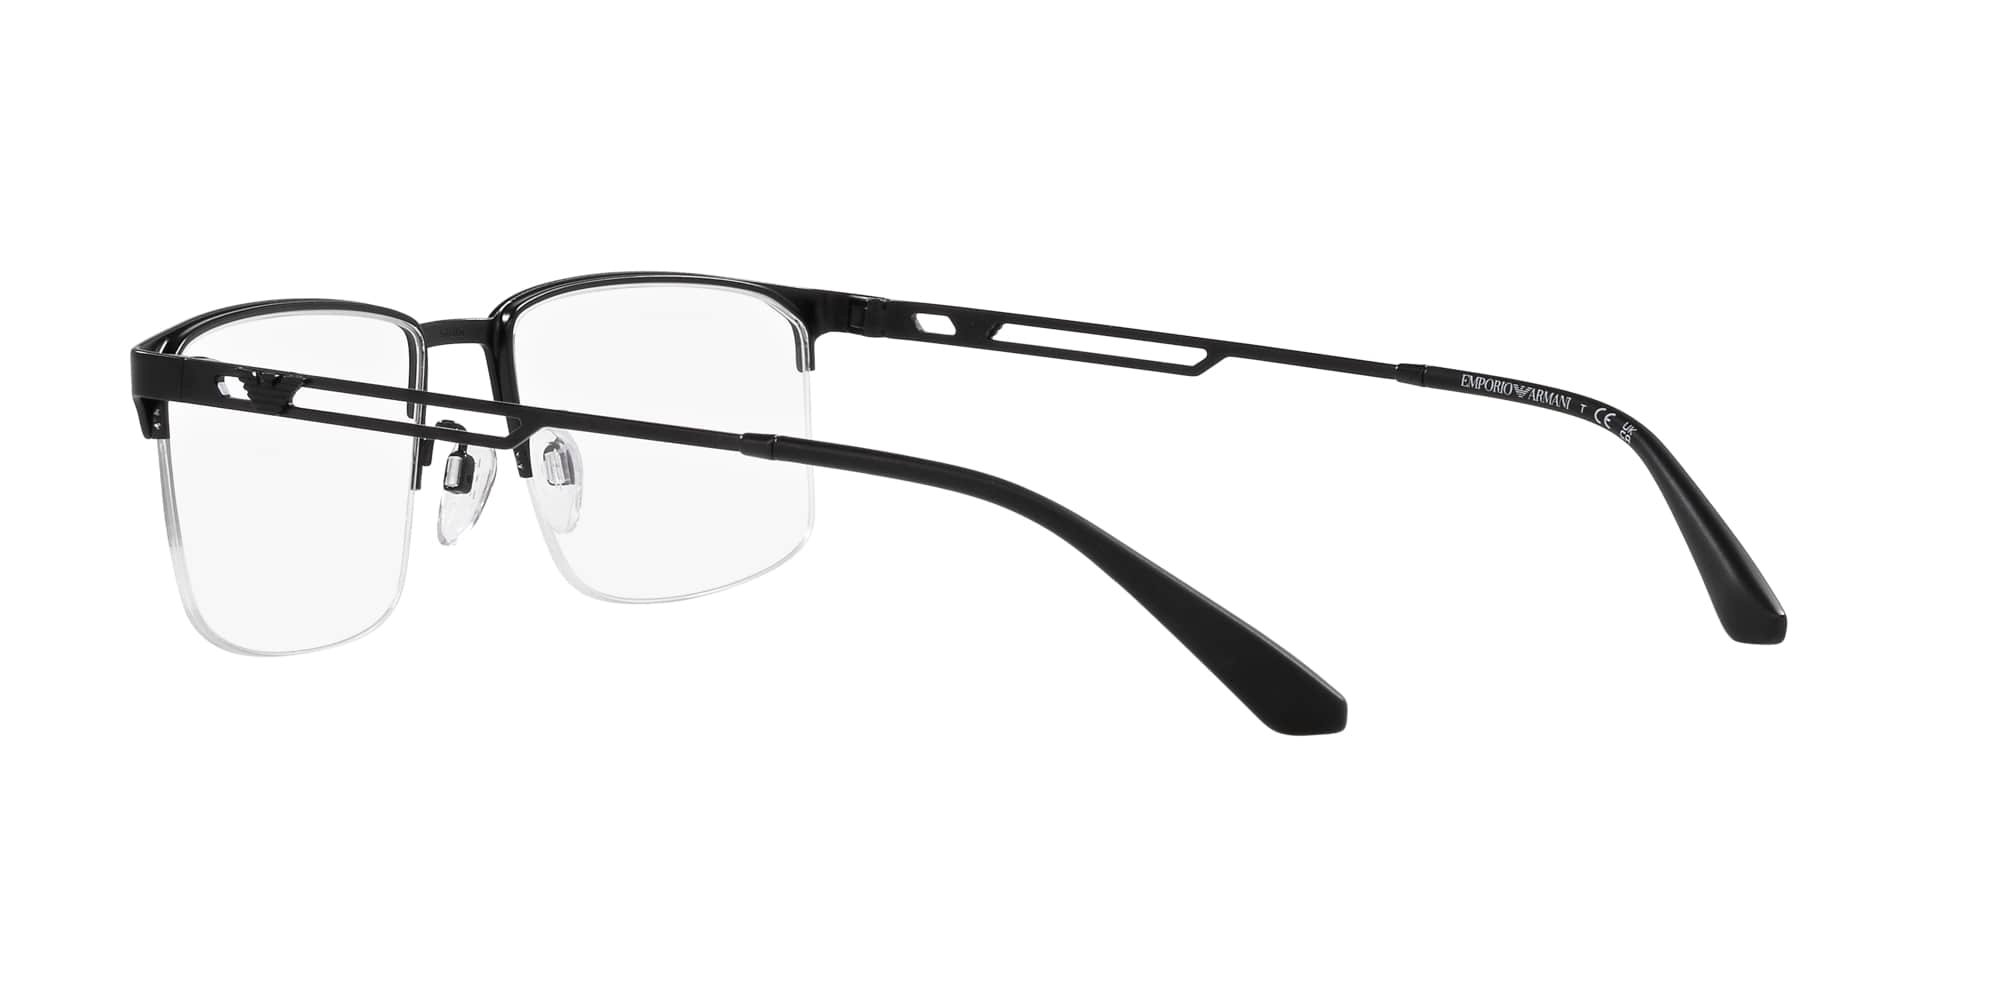 Das Bild zeigt die Korrektionsbrille EA1143 3001 von der Marke Emporio Armani in Schwarz.